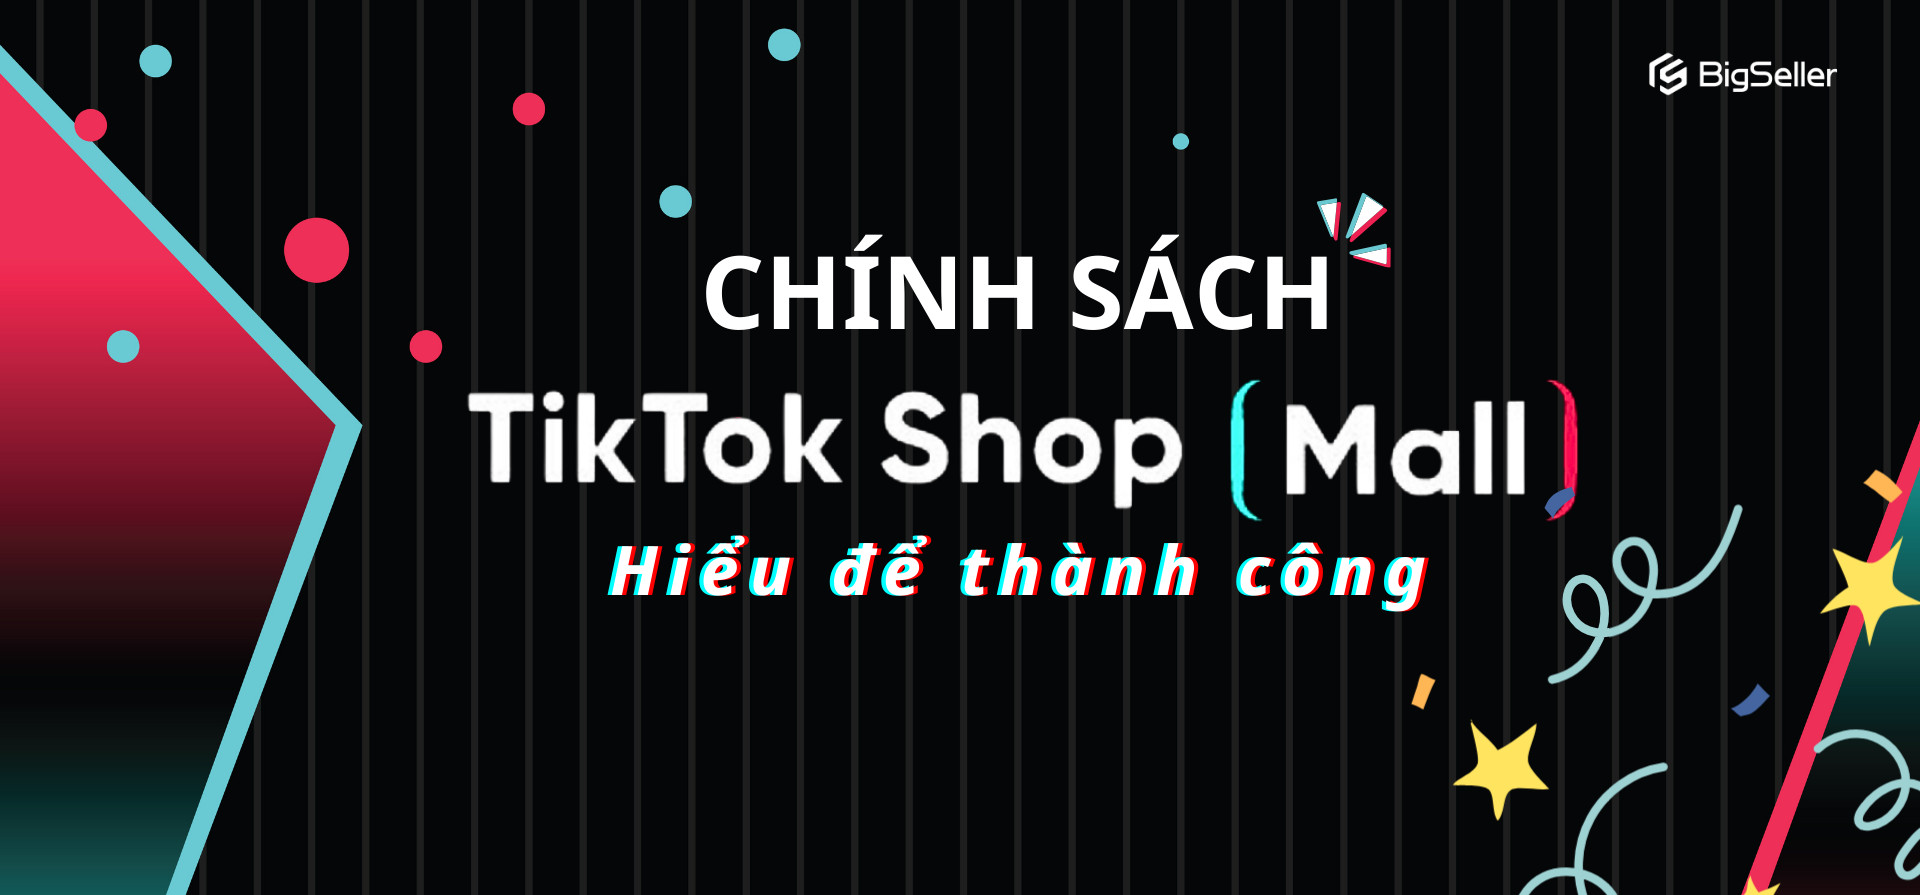 Hiểu chính sách TikTok Shop Mall để tăng doanh số bán hàng